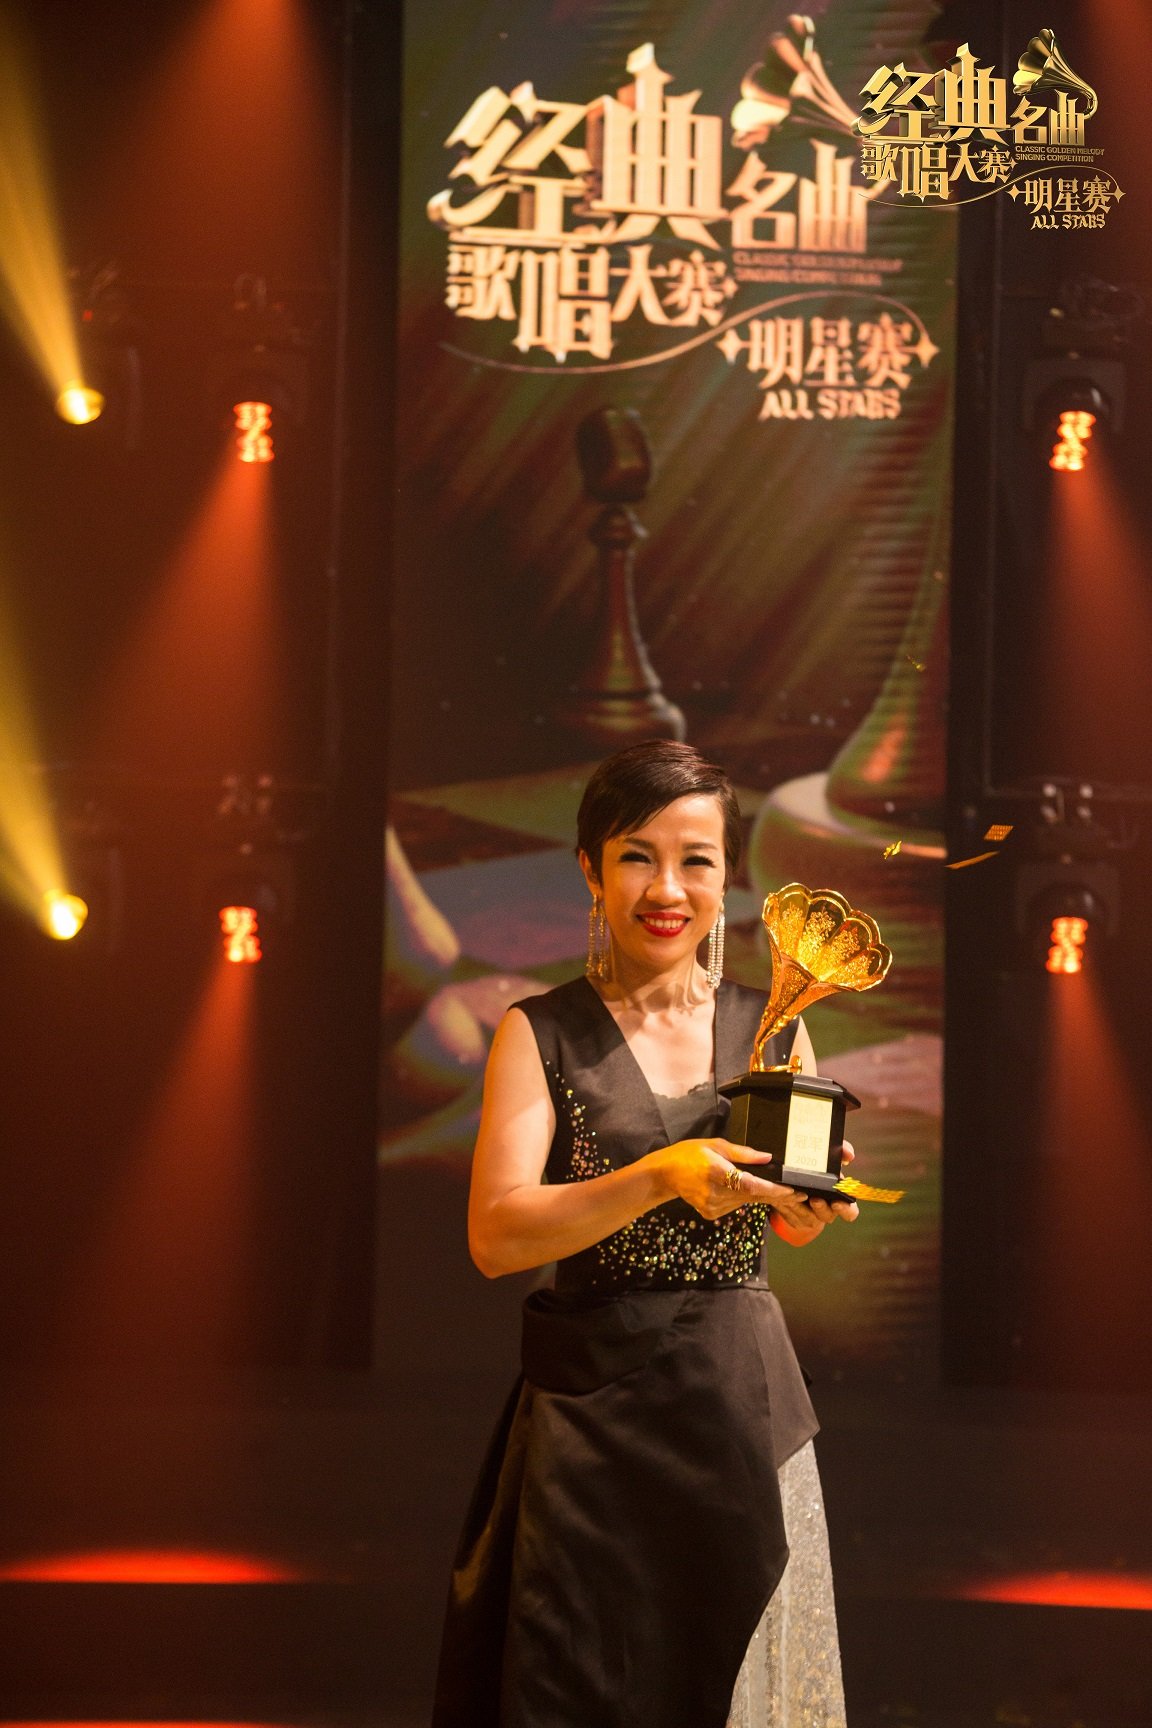 张淑凤在《明星赛》中跳出舒适圈，选唱曲风冷门的歌曲，终成功突围而出摘下冠军宝座。